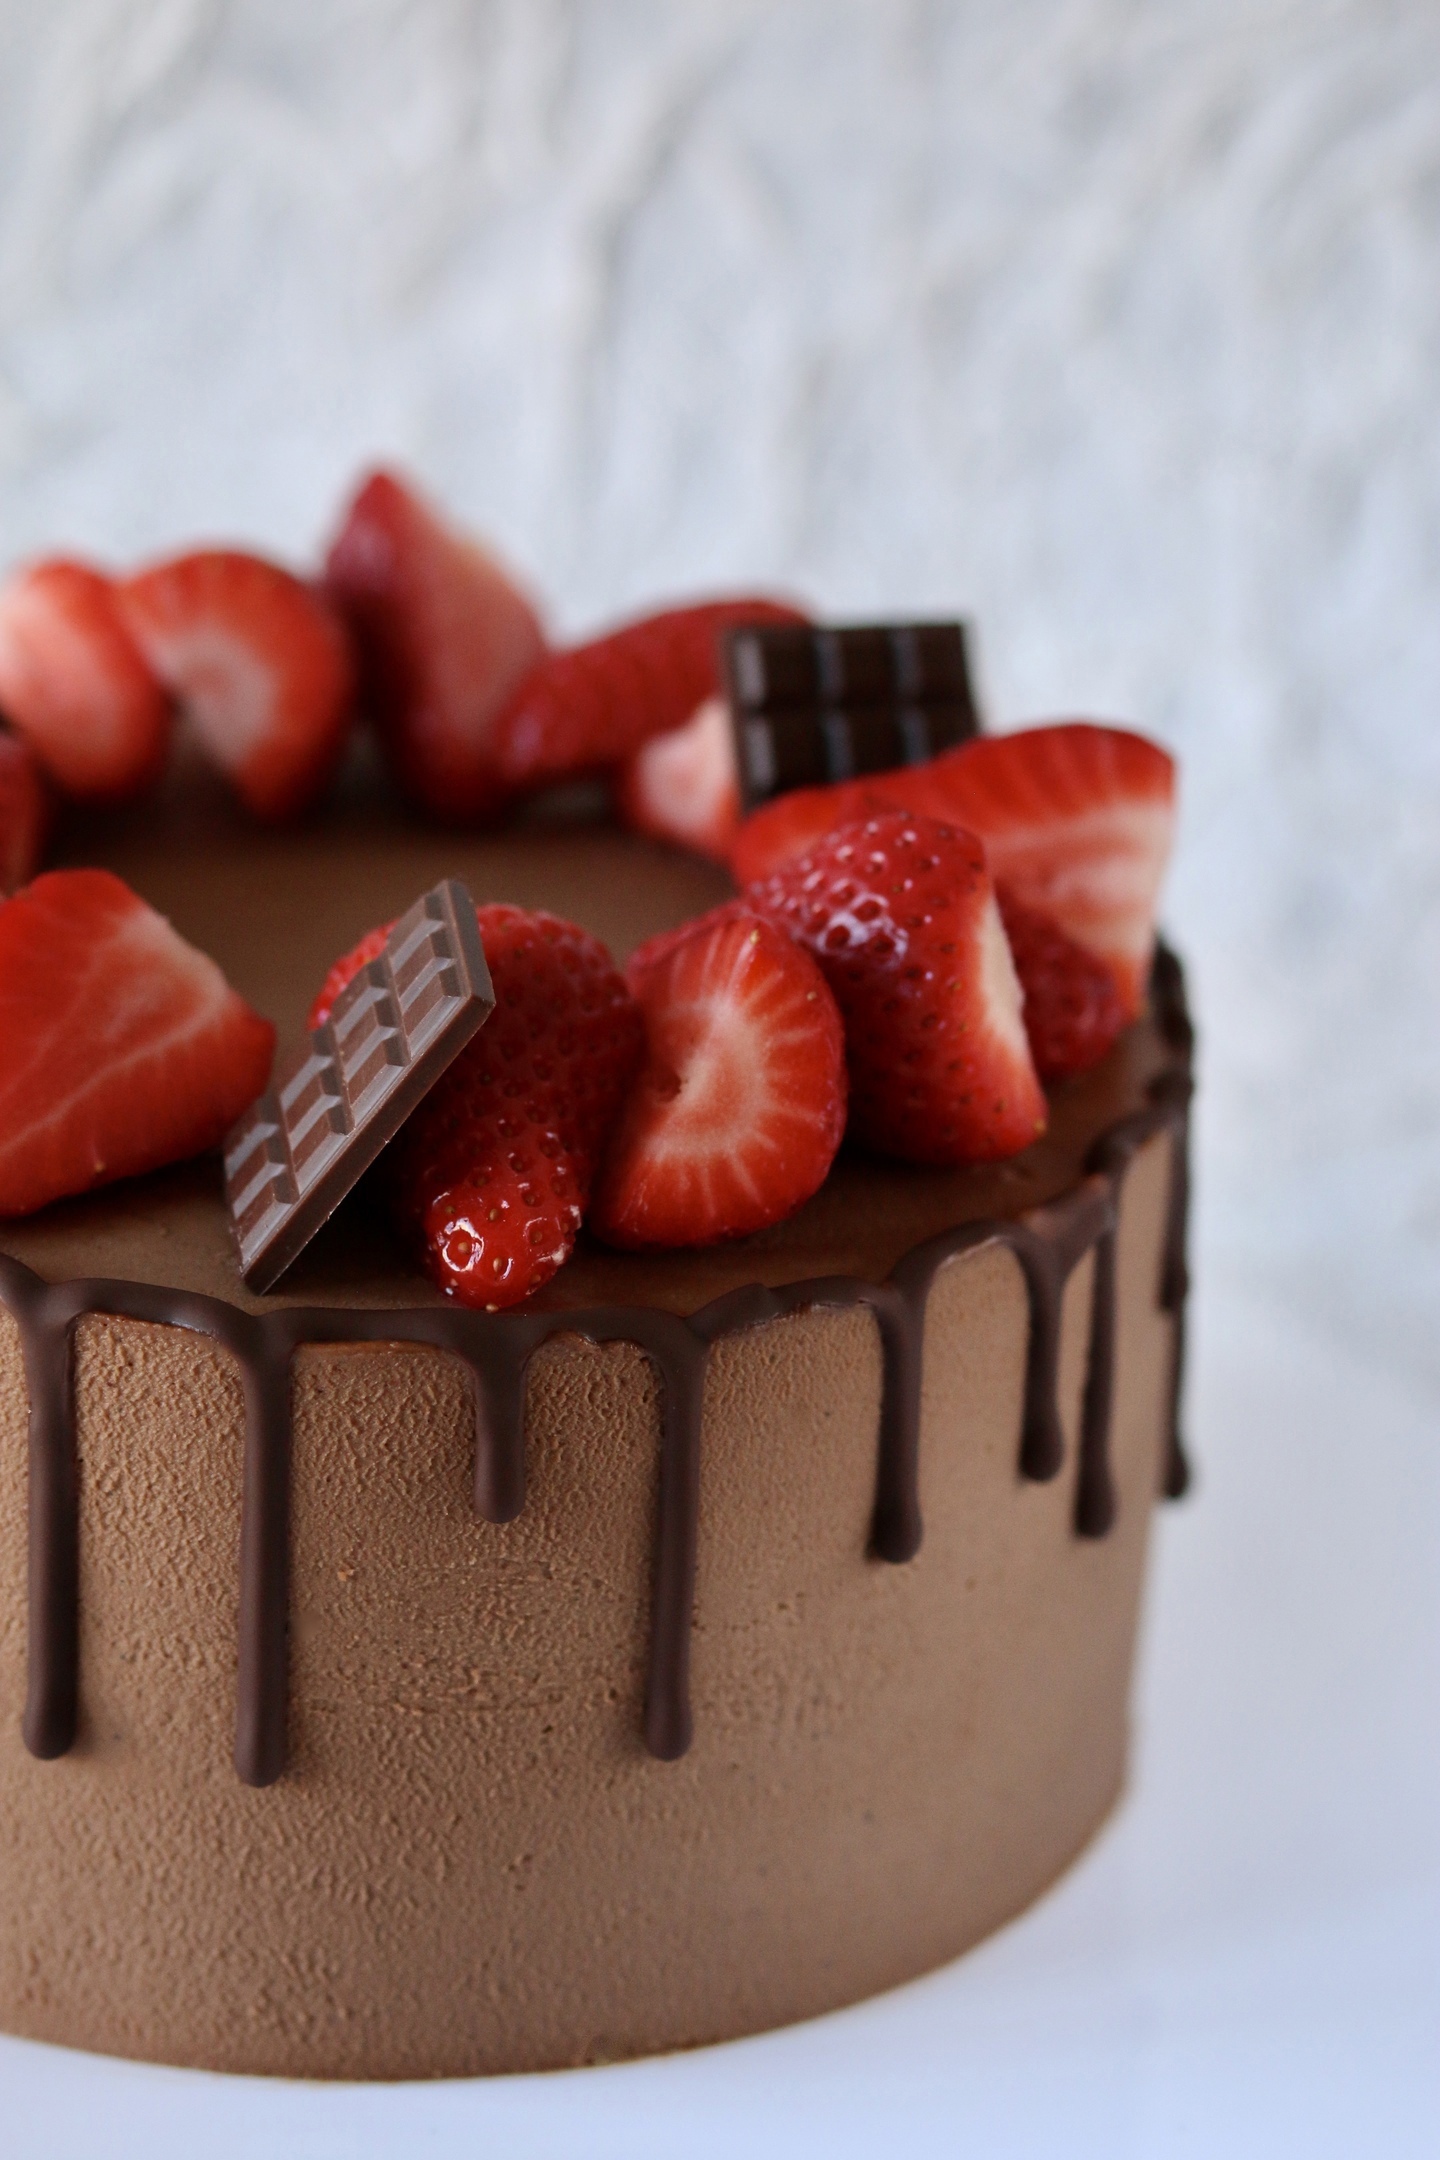 Украшение торта клубникой и шоколадом